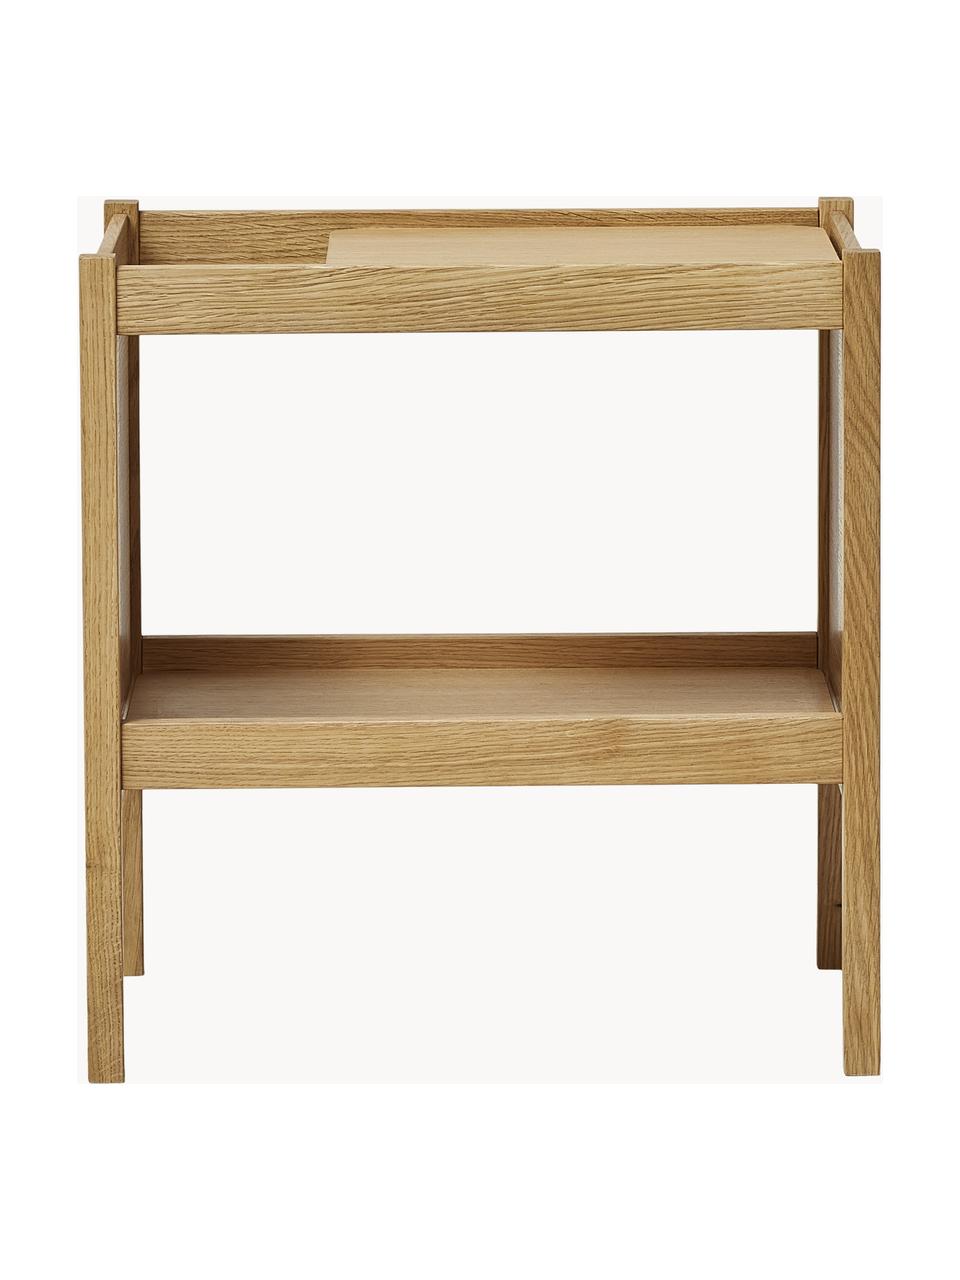 Odkladací stolík z dubového dreva Journal, Dubové drevo, dubová dyha, Dubové drevo, Š 41 x V 43 cm